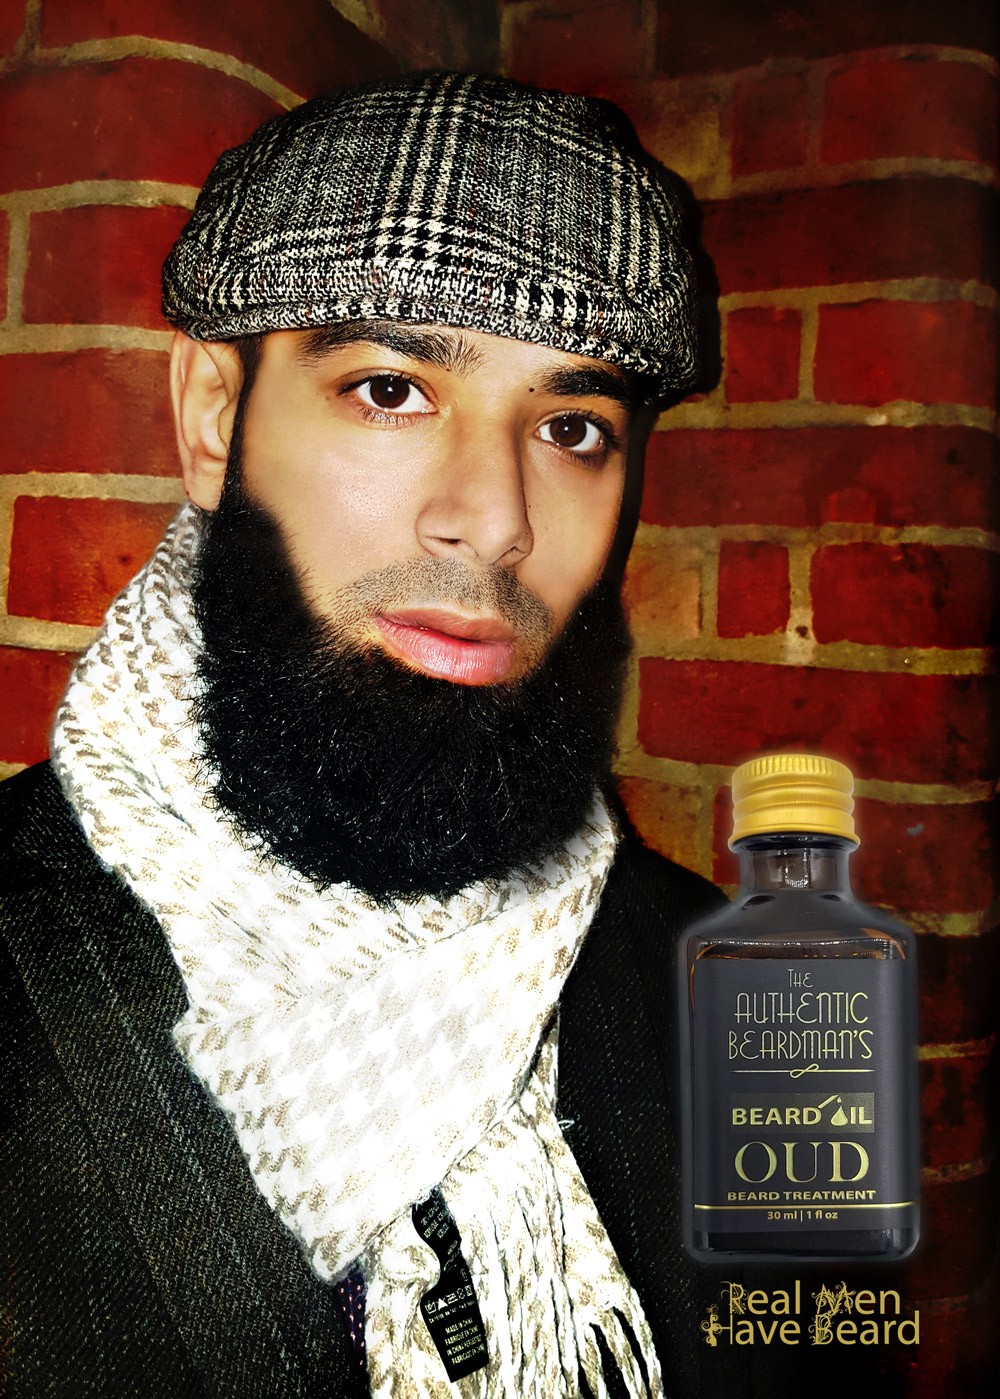 The Authentic Beard Man's Beard Oil